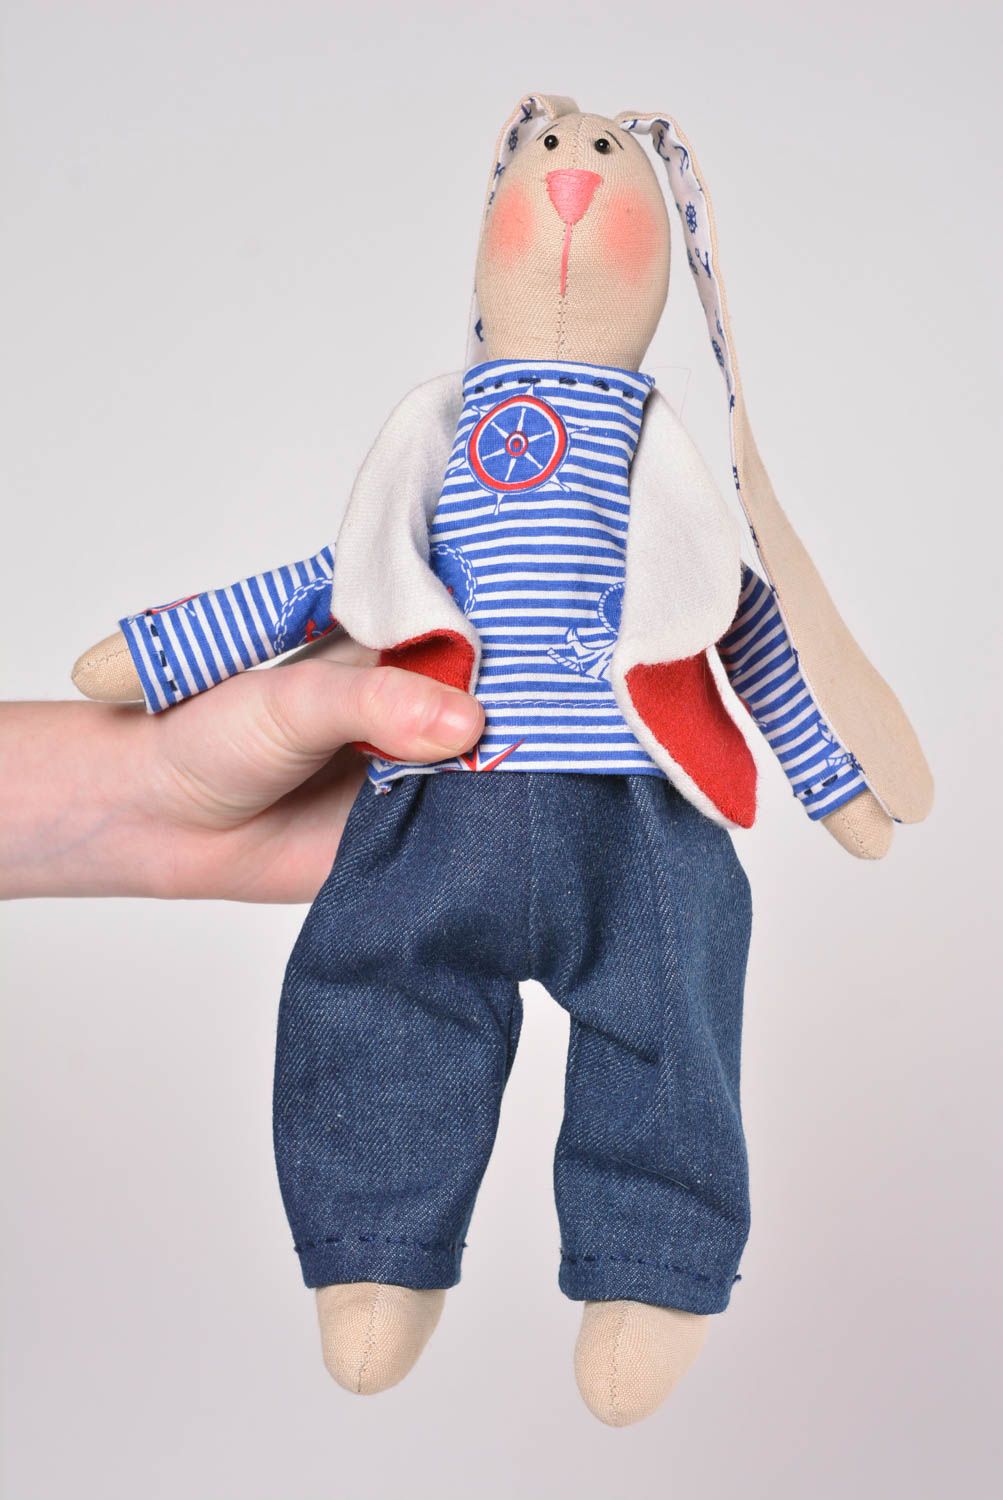 Игрушка заяц ручной работы авторская игрушка из ткани стильный подарок фото 2